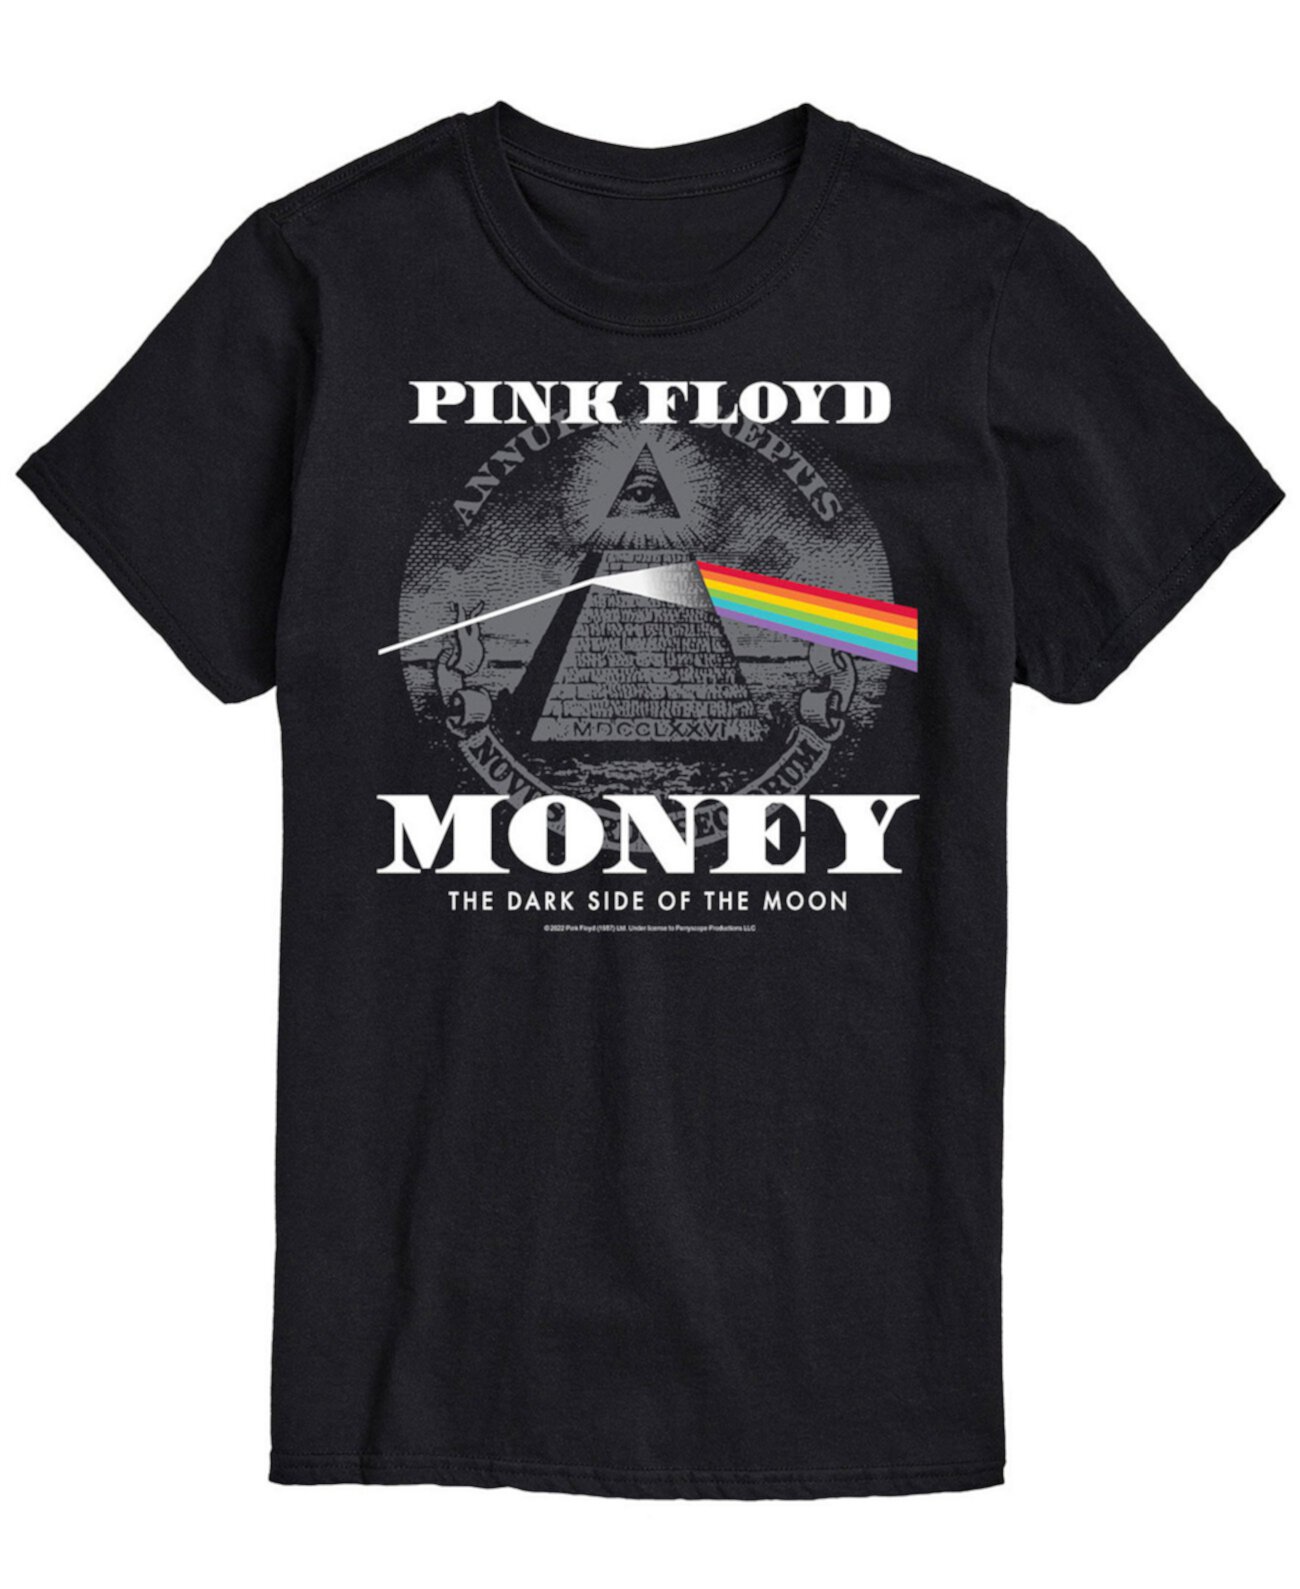 Мужская футболка Pink Floyd Money AIRWAVES